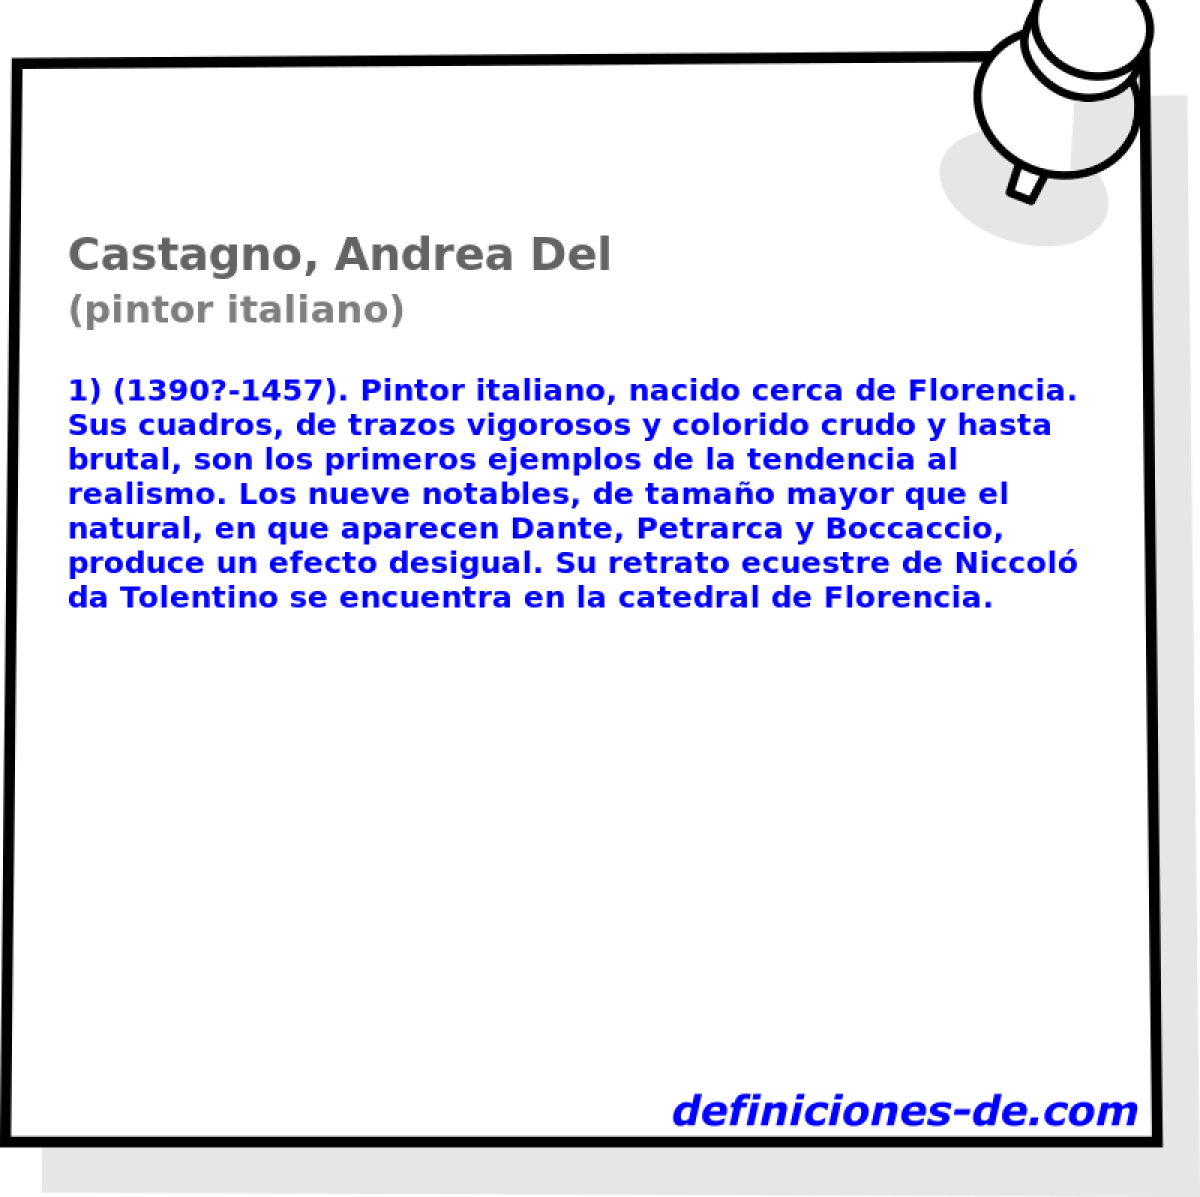 Castagno, Andrea Del (pintor italiano)